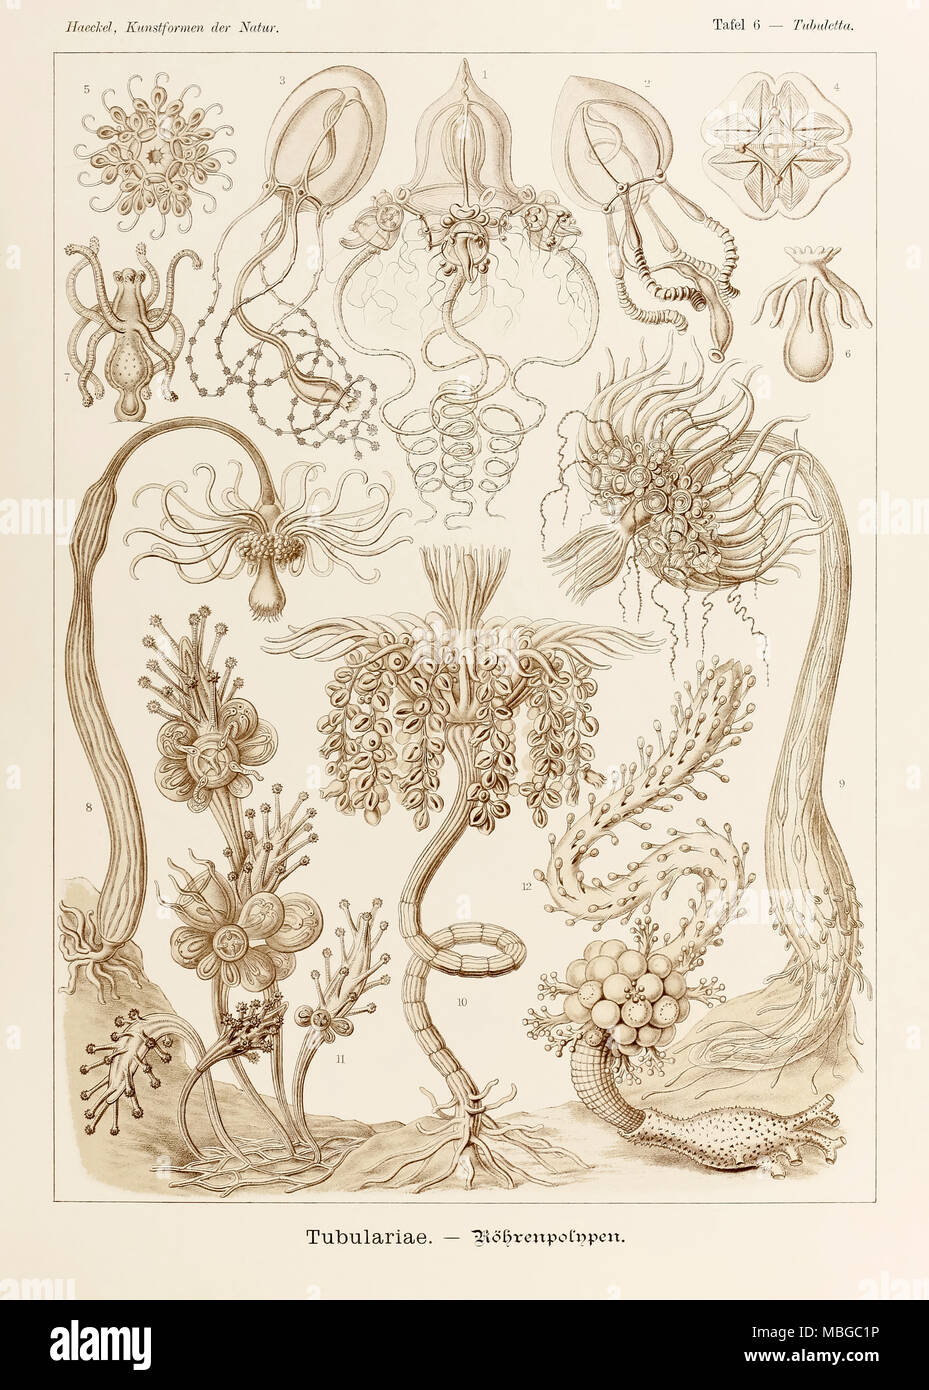 La piastra 6 Tubulariae Tubuletta da 'Kunstformen der Natur" (forme d'Arte nella Natura) illustrato da Ernst Haeckel (1834-1919). Vedere ulteriori informazioni qui di seguito. Foto Stock